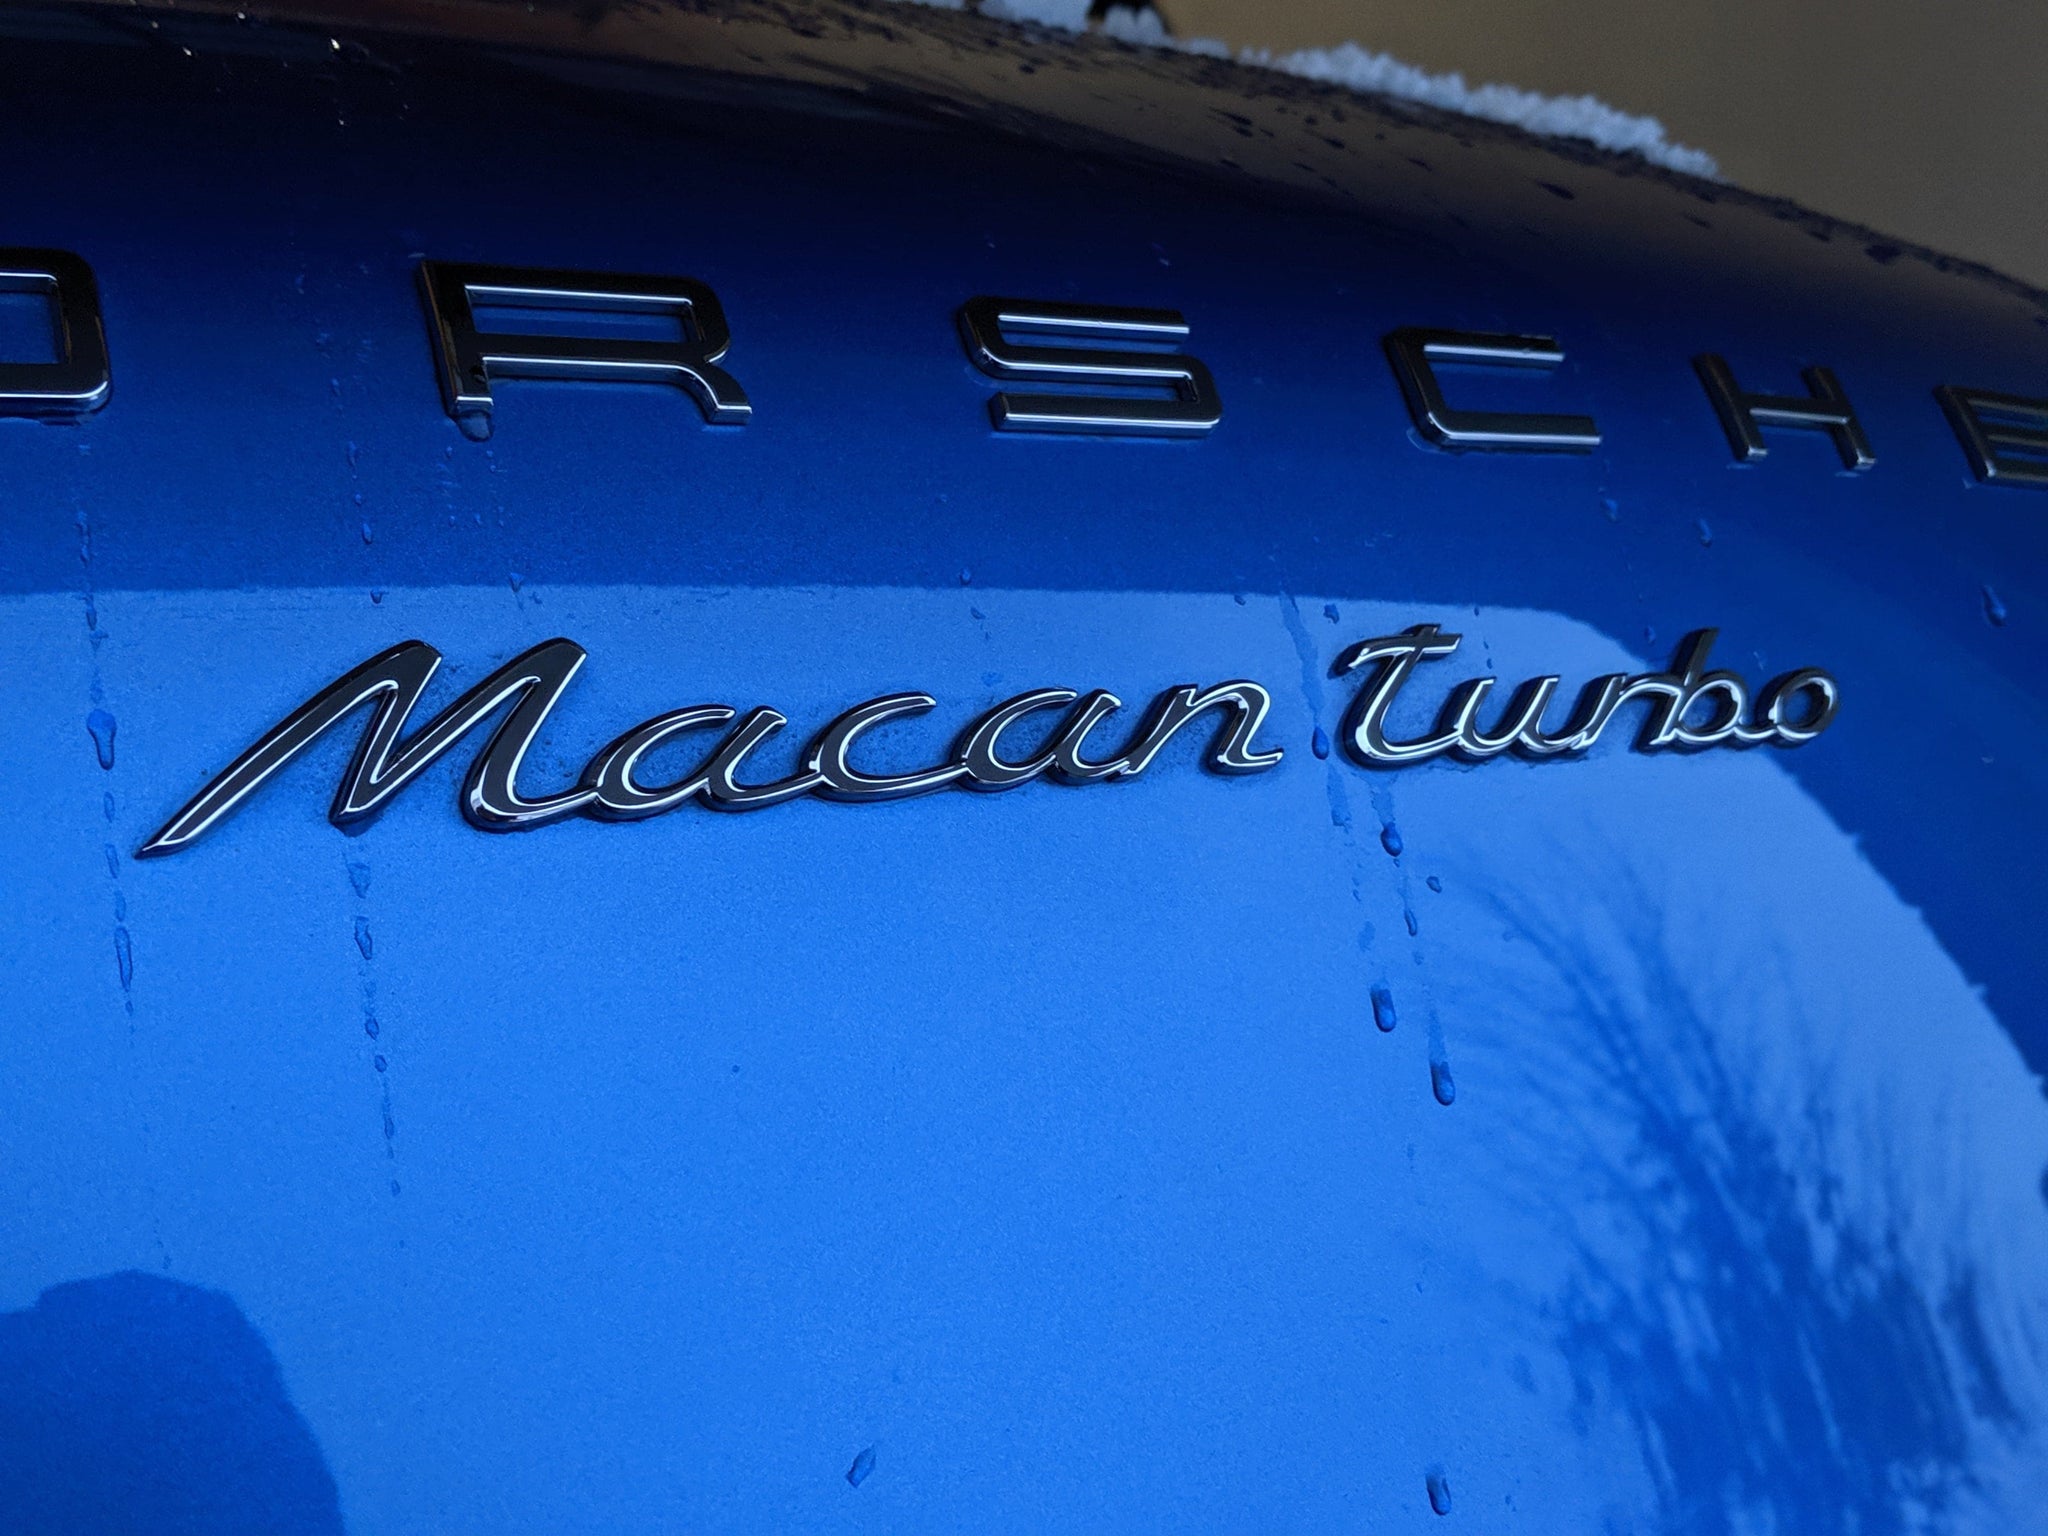 2014+ Porsche Macan - Rear Porsche, Macan, and Turbo Combo